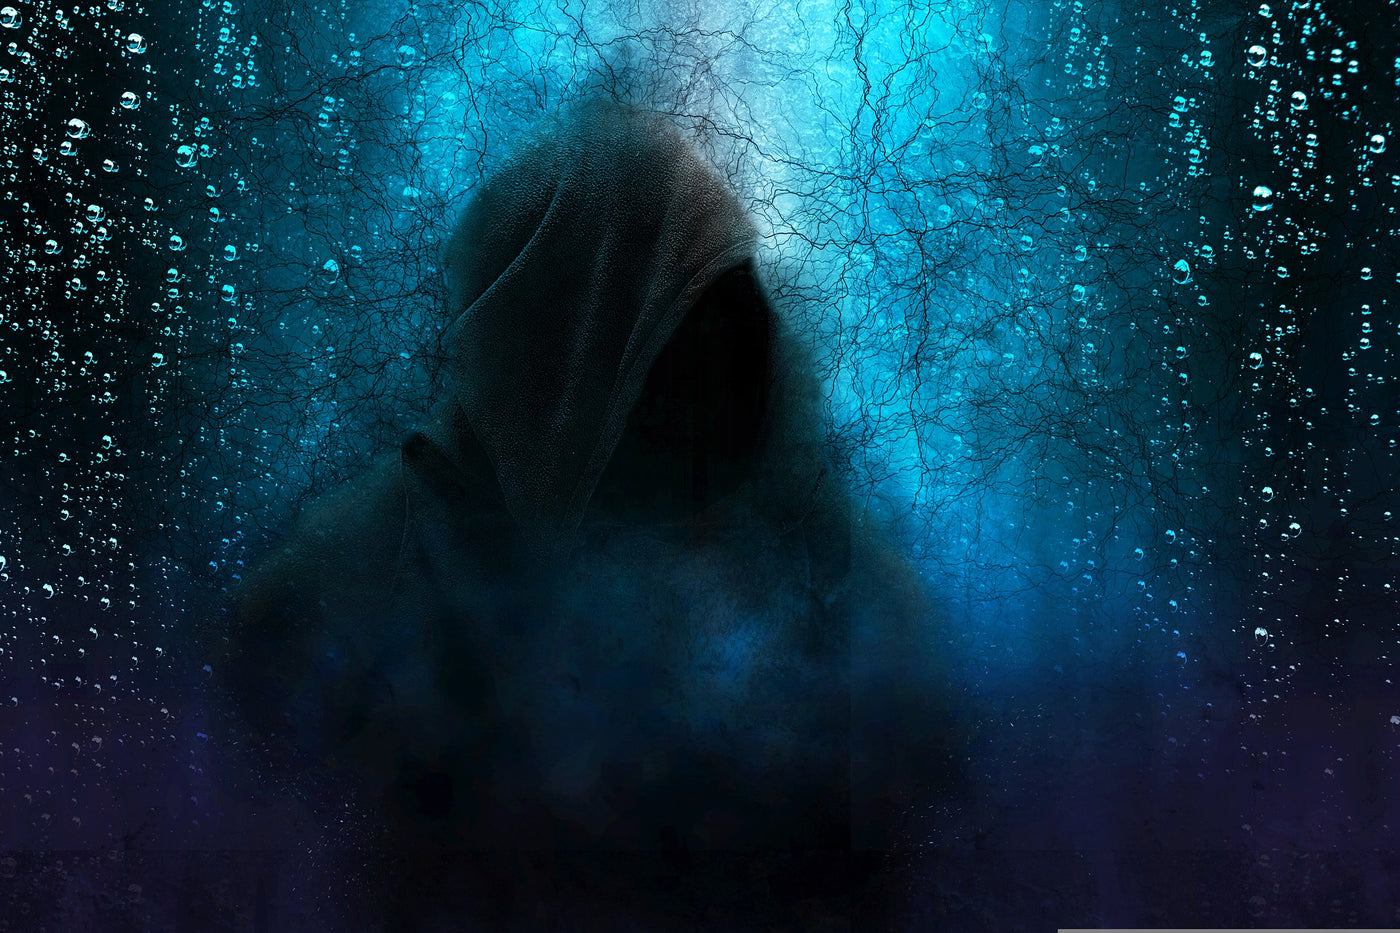 hooded figure in the dark